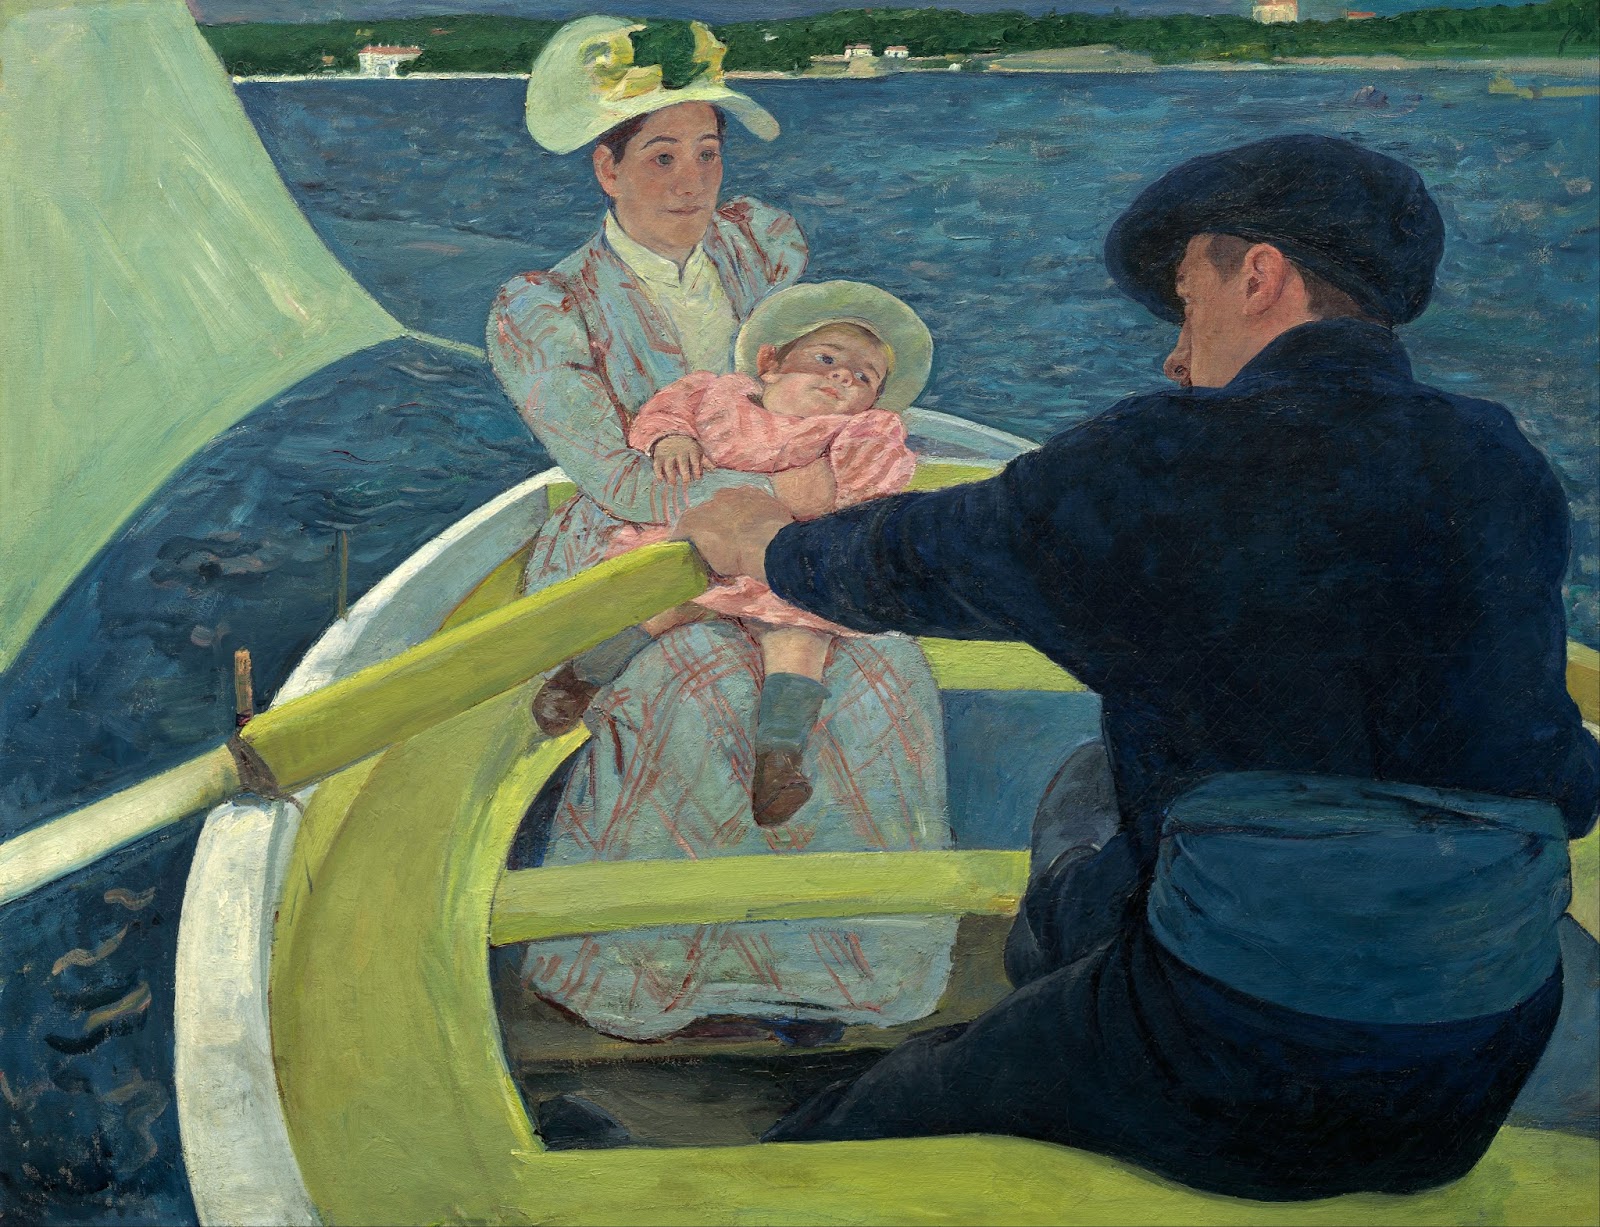 ボートパーティ by Mary Cassatt - 1893年–1894年 - 90 x 117 cm 